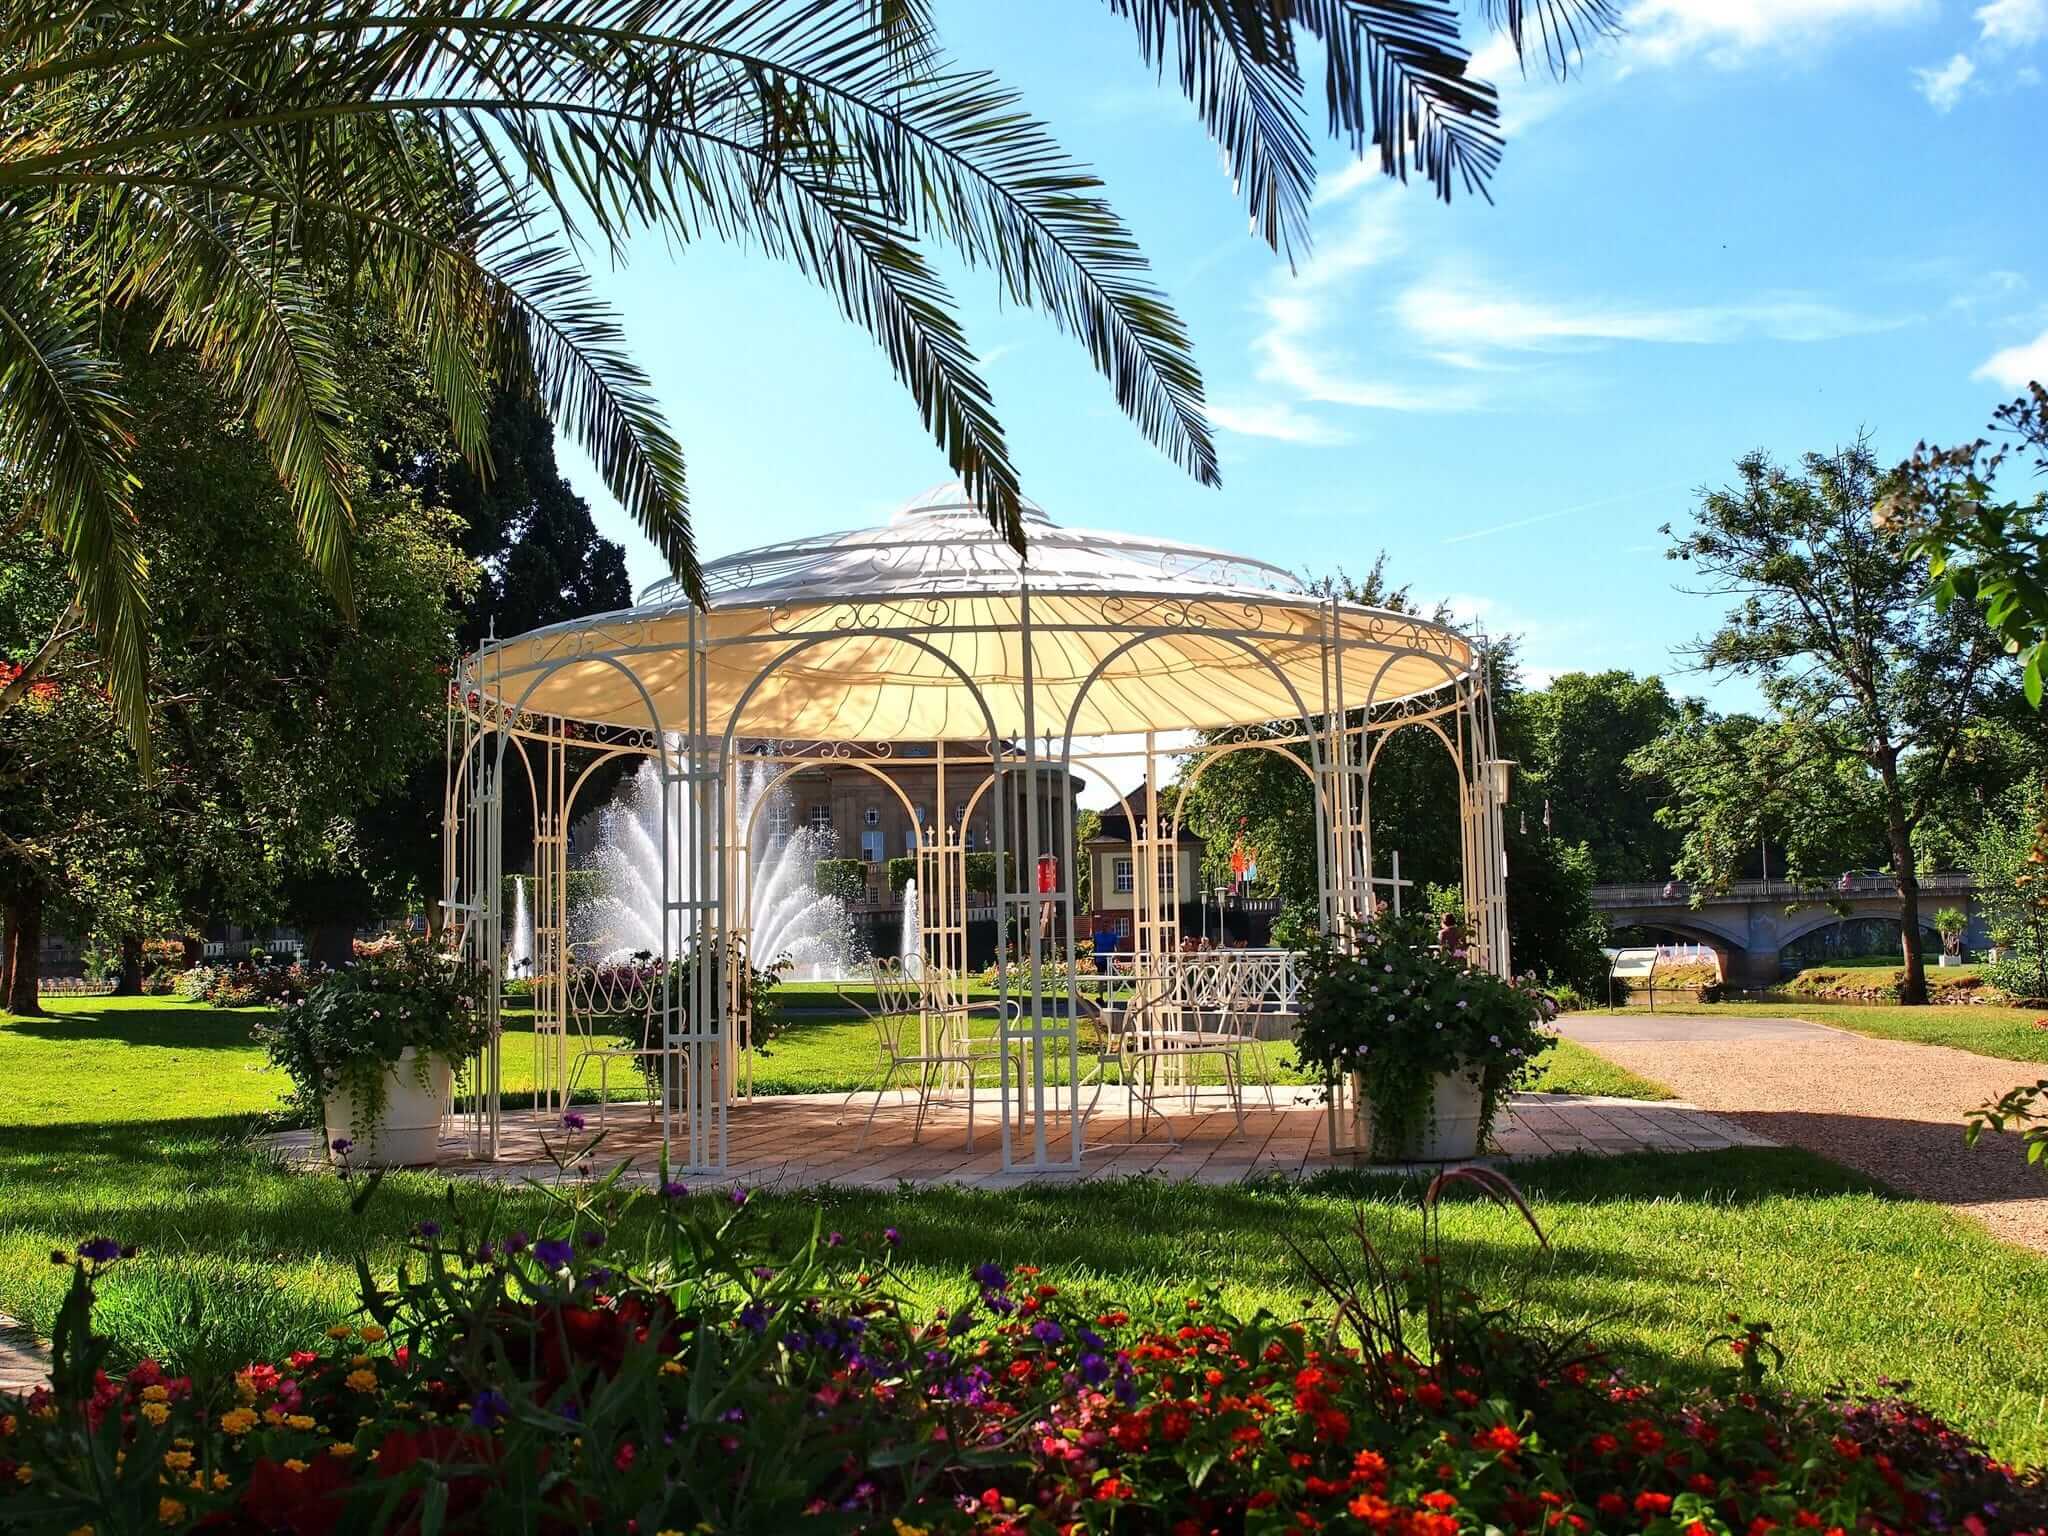 Pavillon Toskana in pulverbeschichteter Ausführung mit Sonnensegel und Messingkugel in einem Park